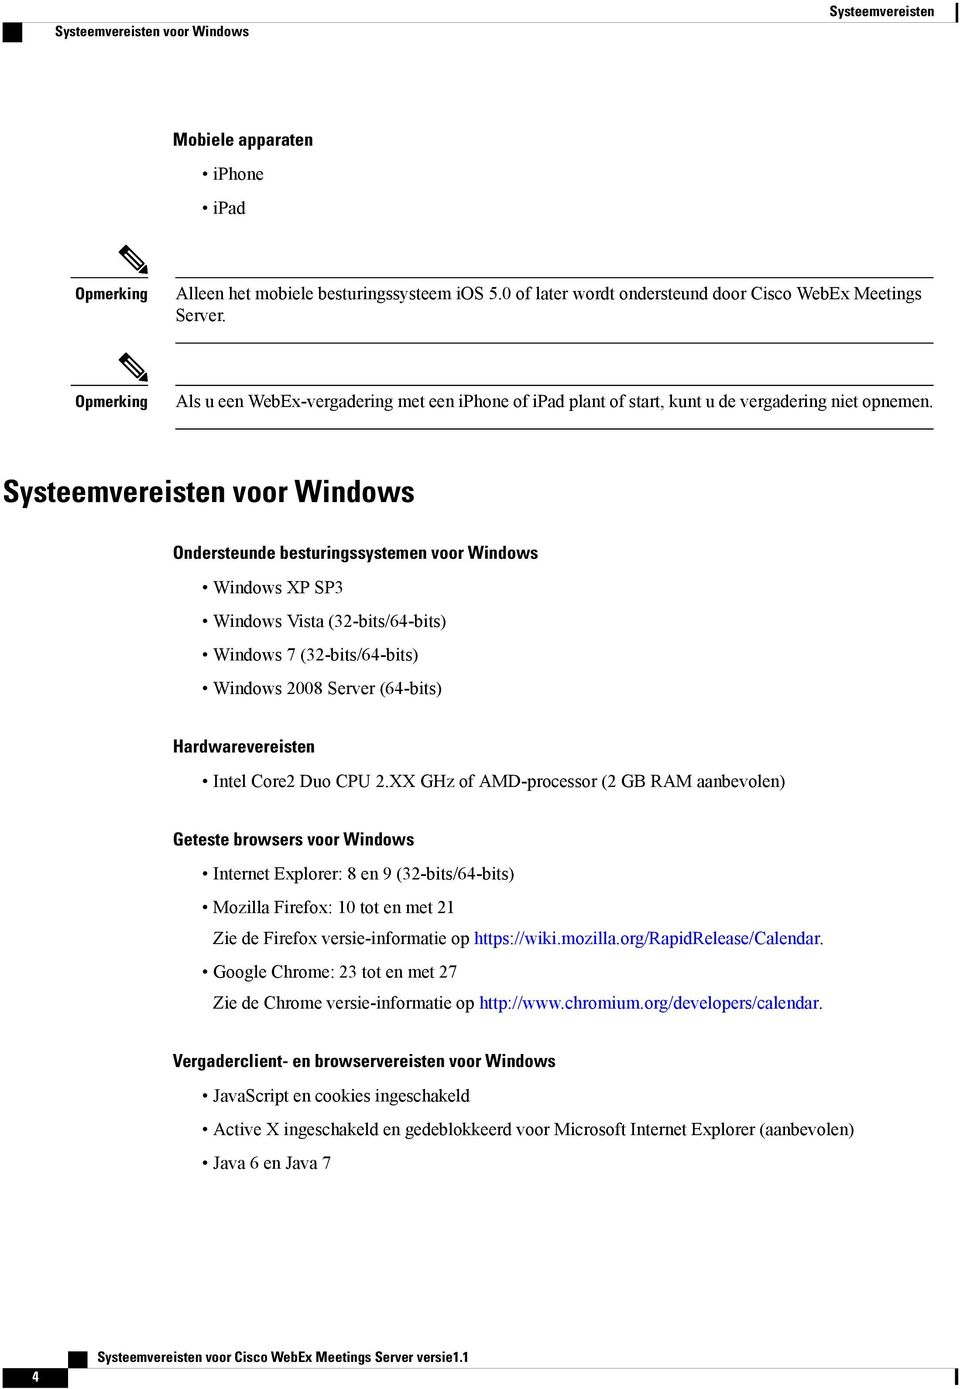 Systeemvereisten voor Windows Ondersteunde besturingssystemen voor Windows Windows XP SP3 Windows Vista (32-bits/64-bits) Windows 7 (32-bits/64-bits) Windows 2008 Server (64-bits) Hardwarevereisten